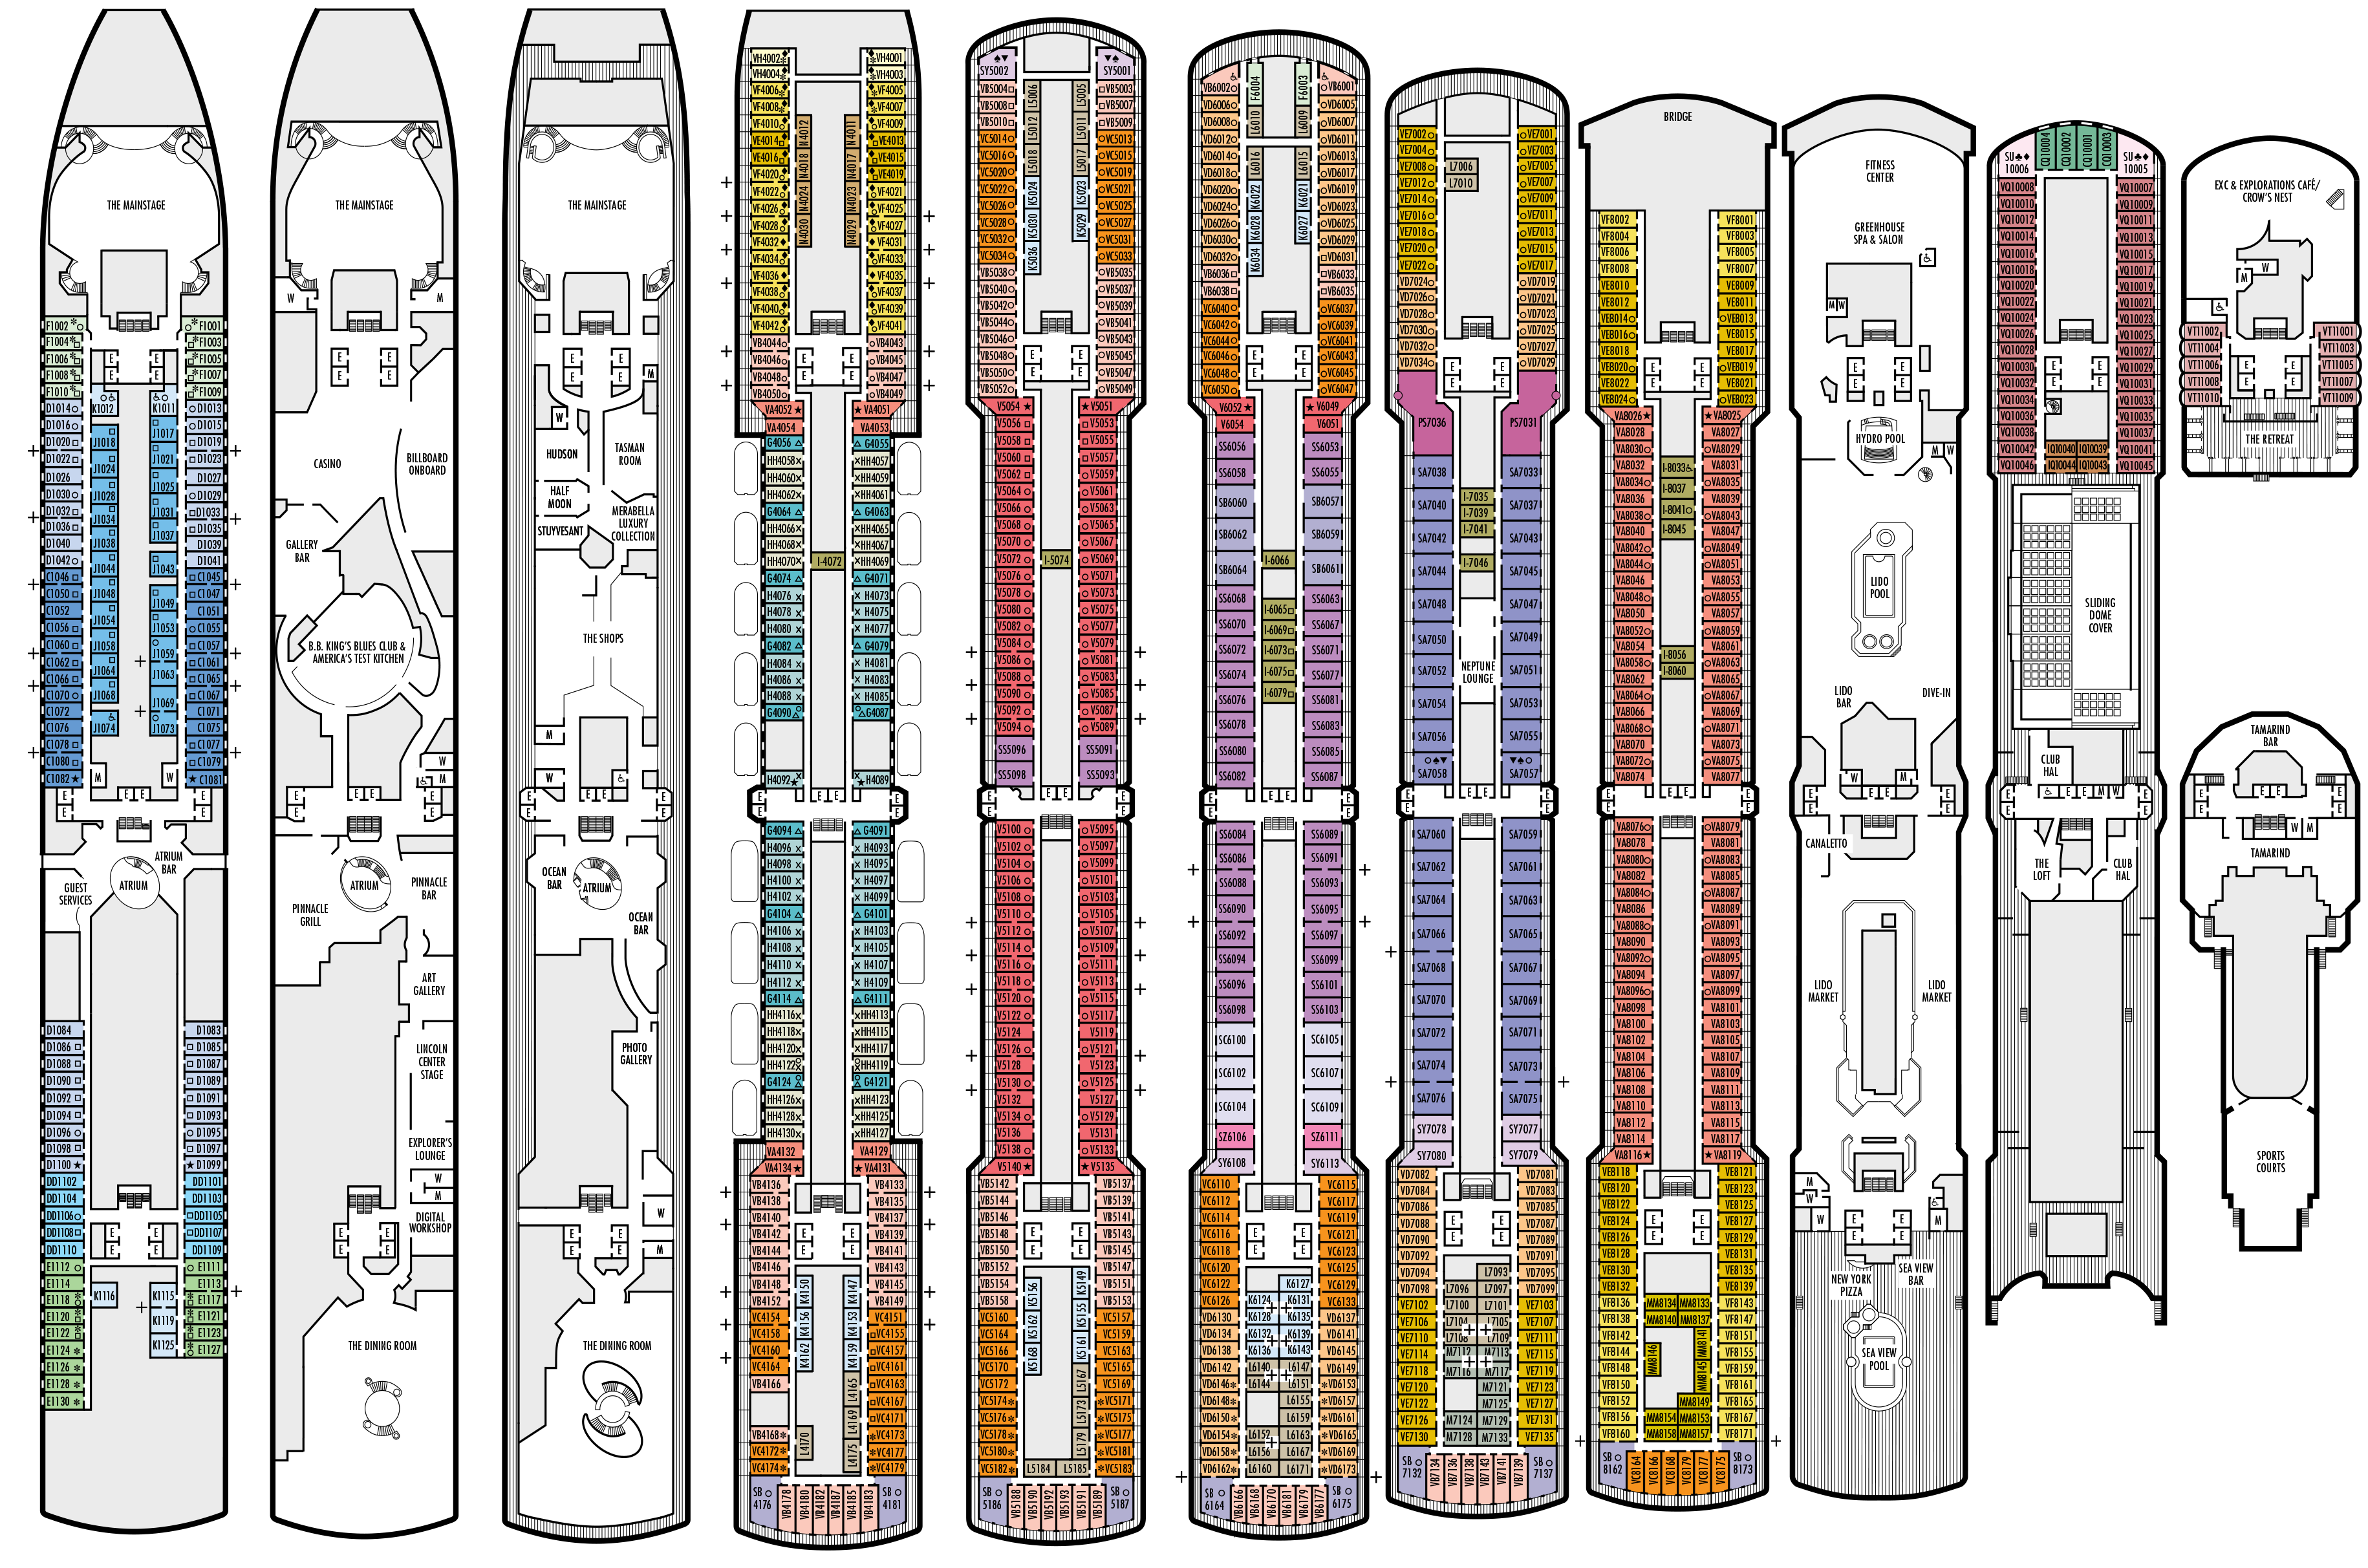 eurodam cruise ship deck plan